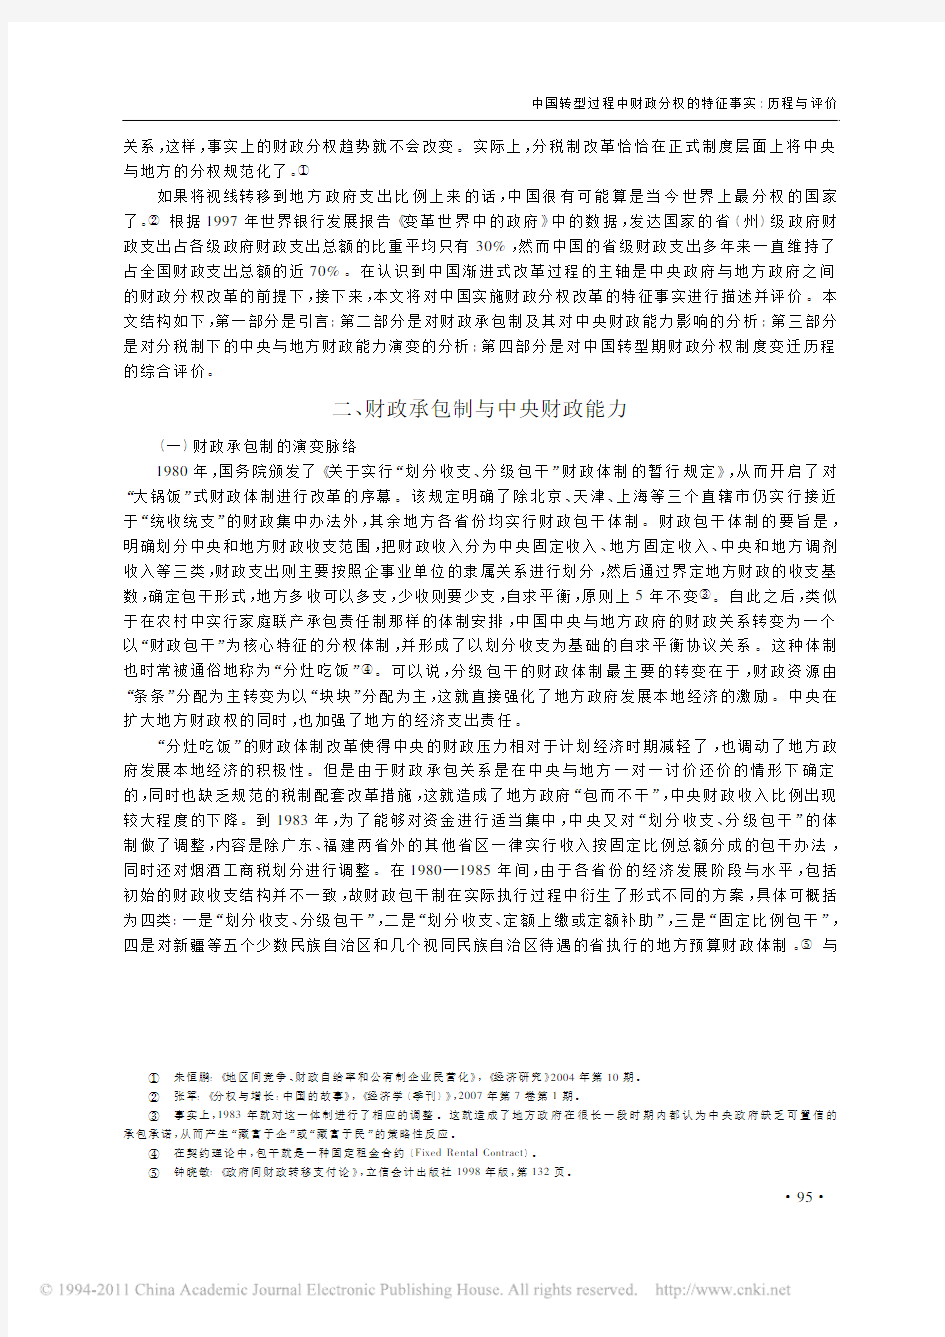 中国转型过程中财政分权的特征事实_历程与评价[1]